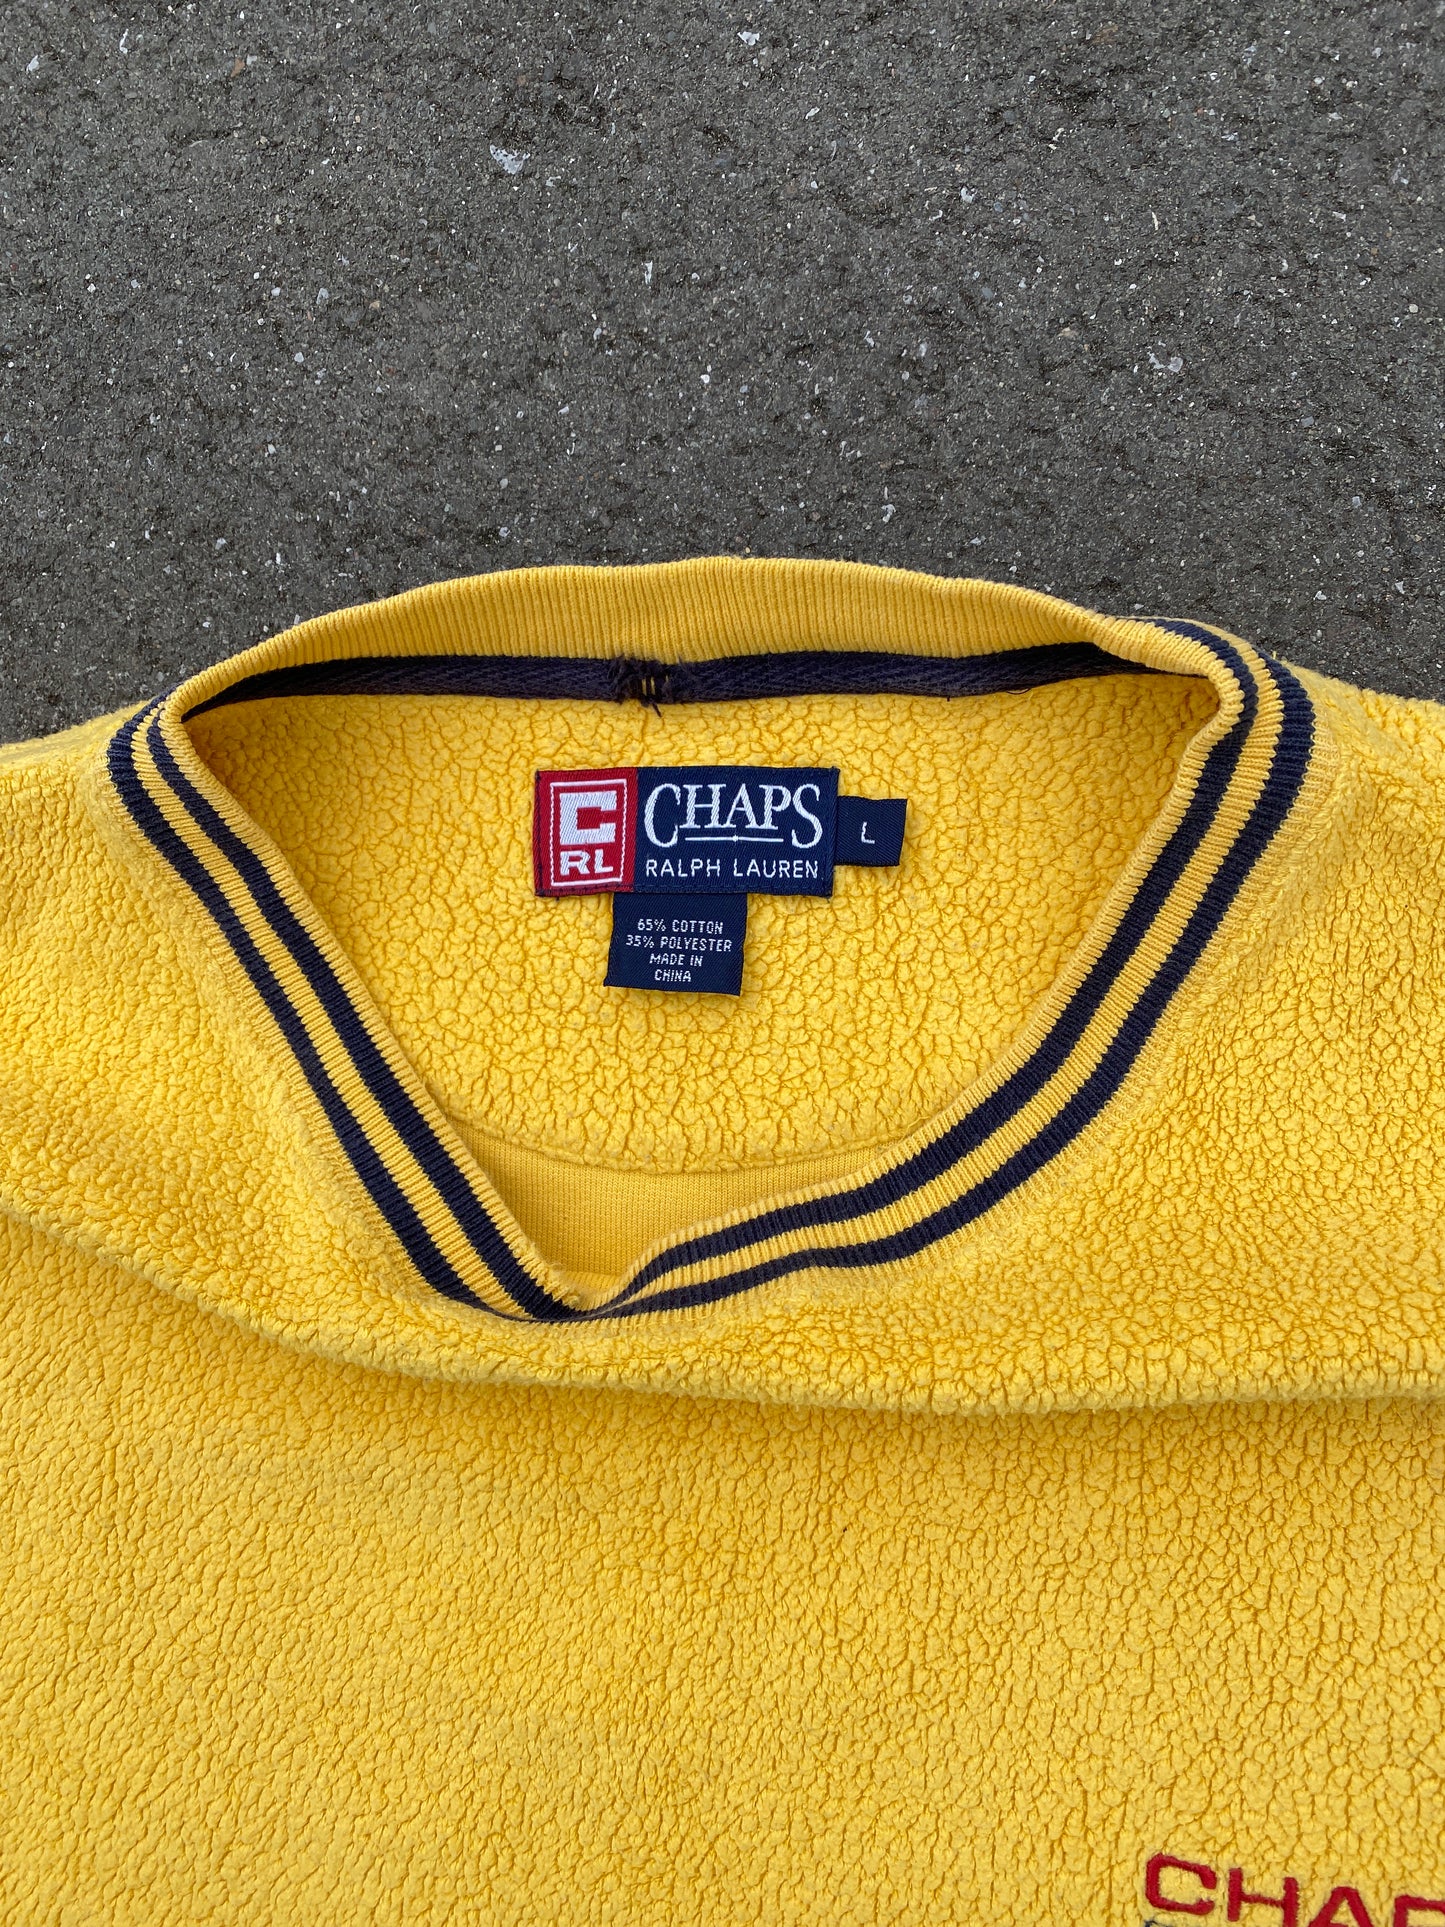 Chaps Ralph Lauren fleece sweater (L)